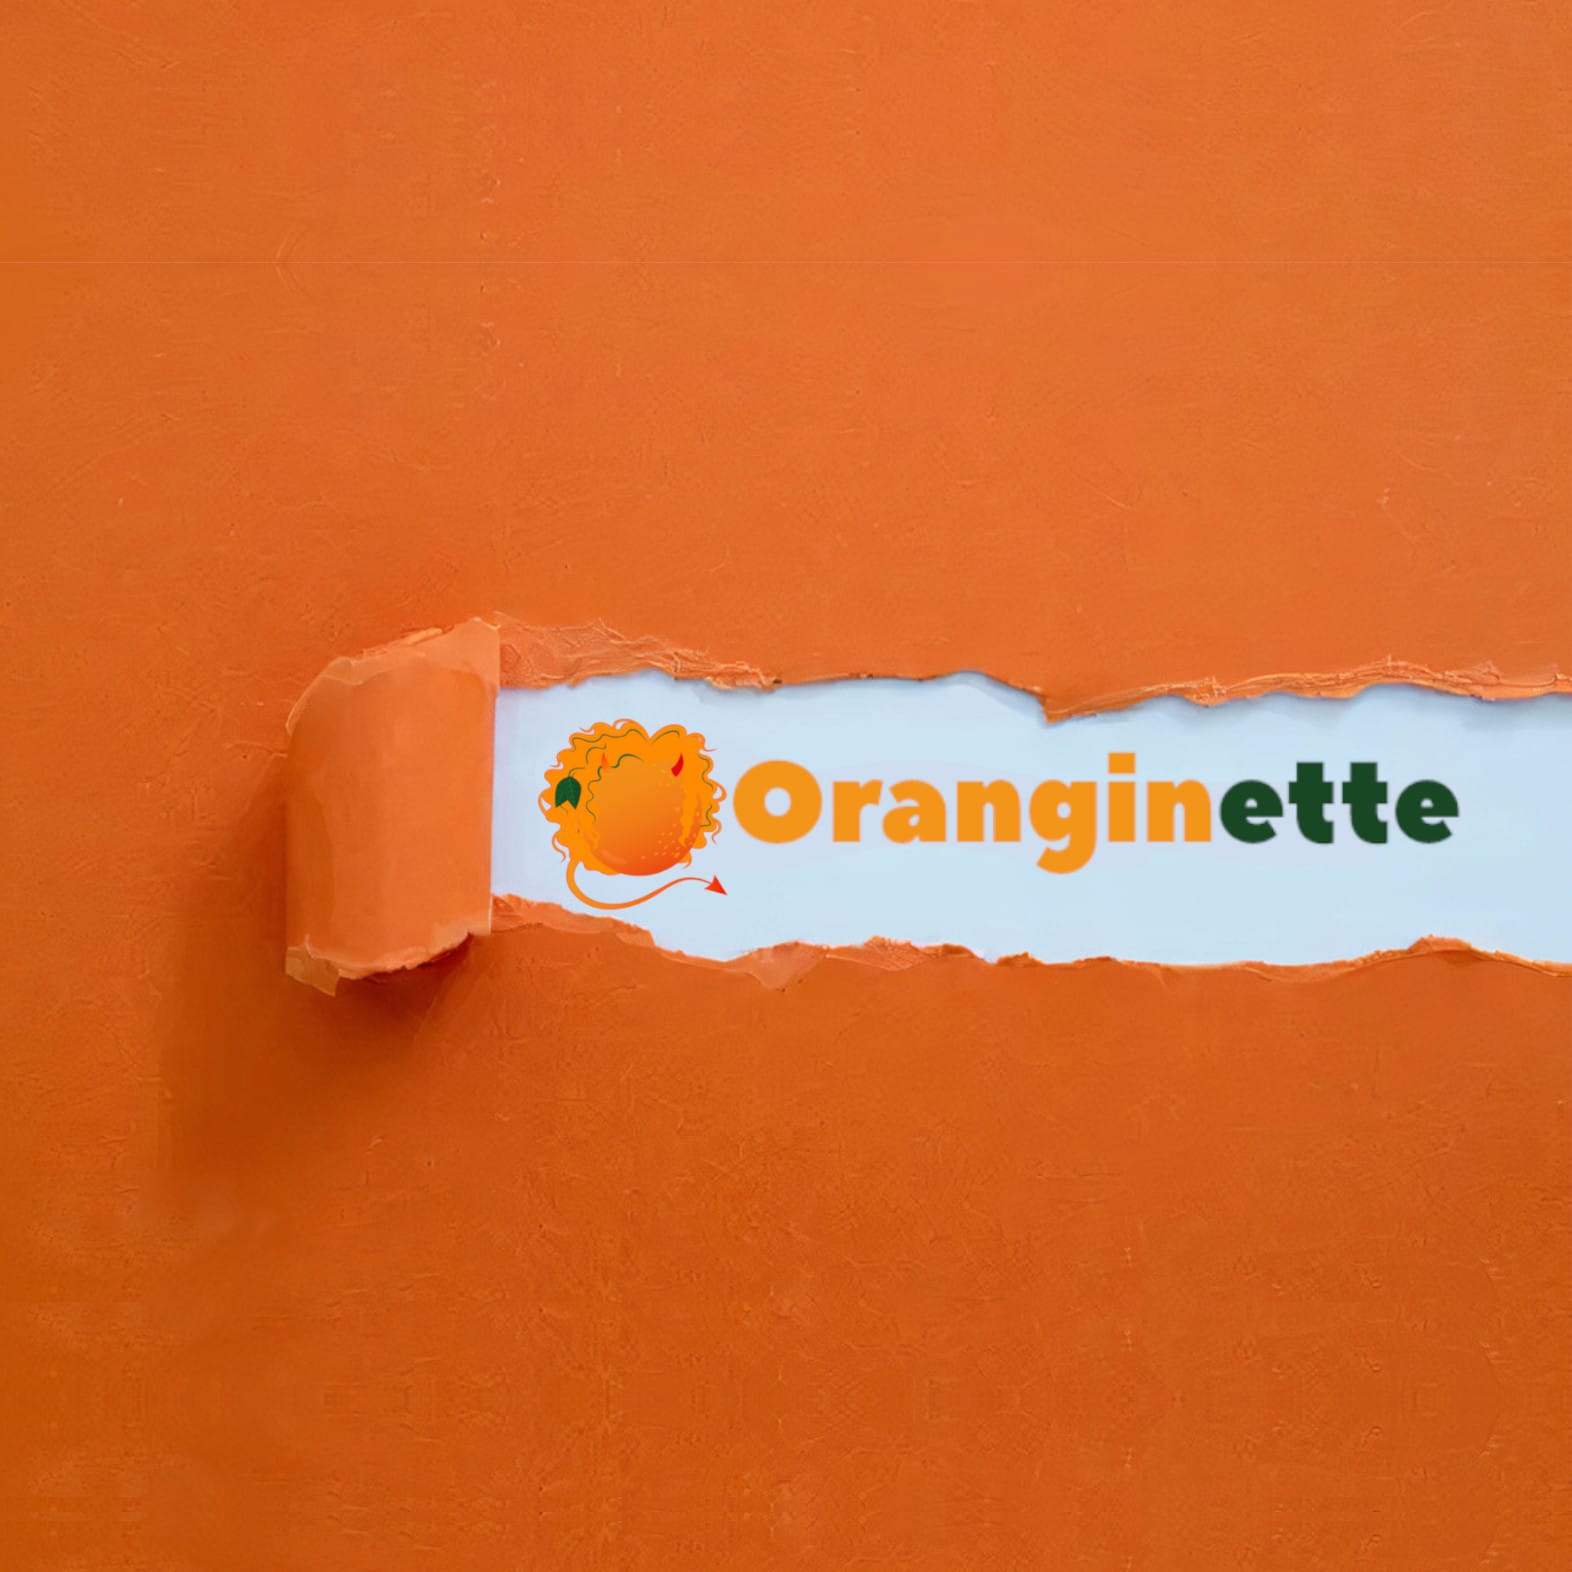 Oranginette